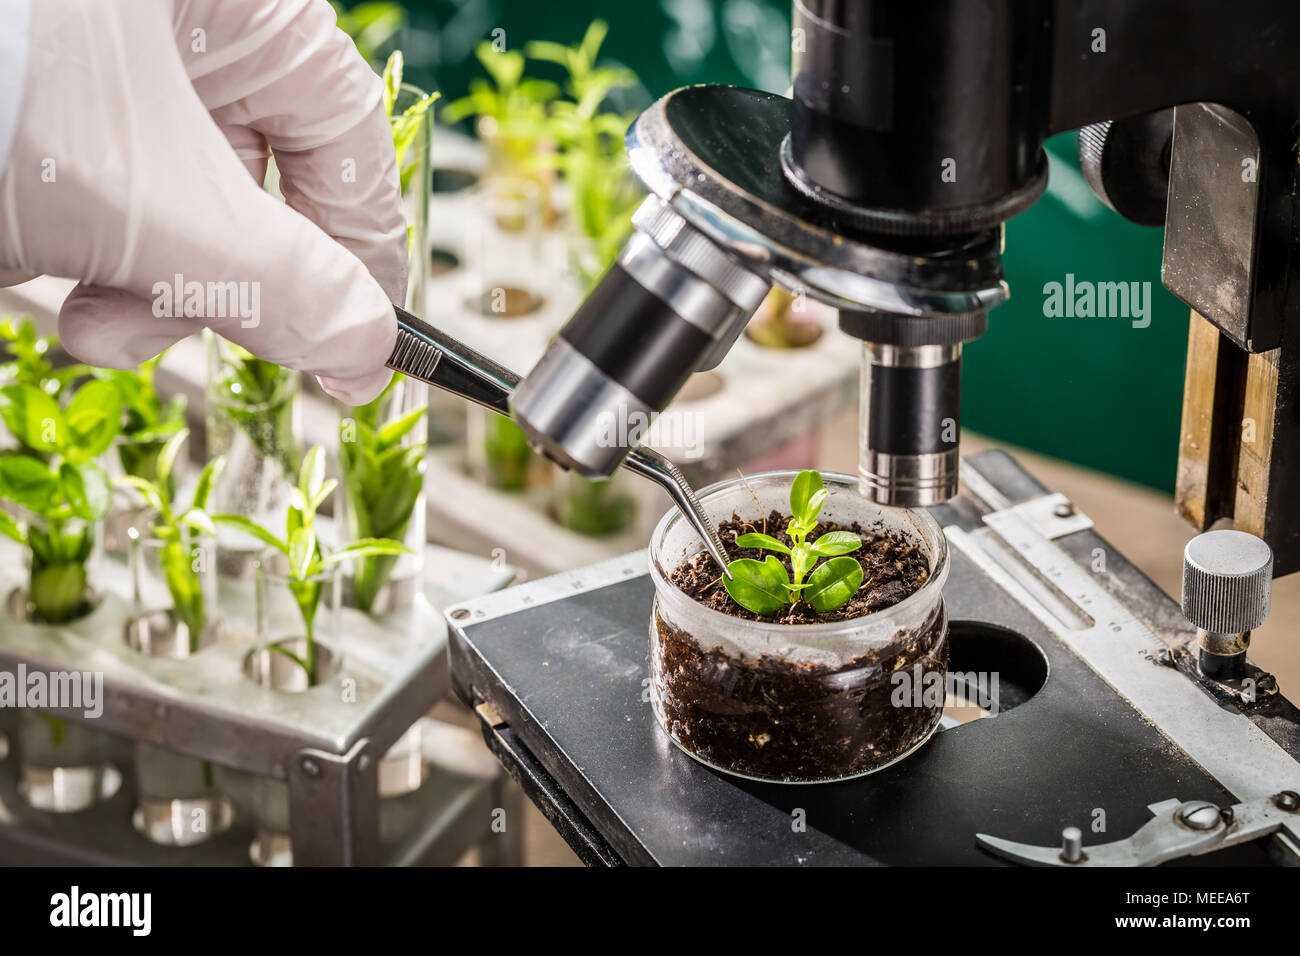 School laboratory exploring new methods of plant breeding Stock Photo